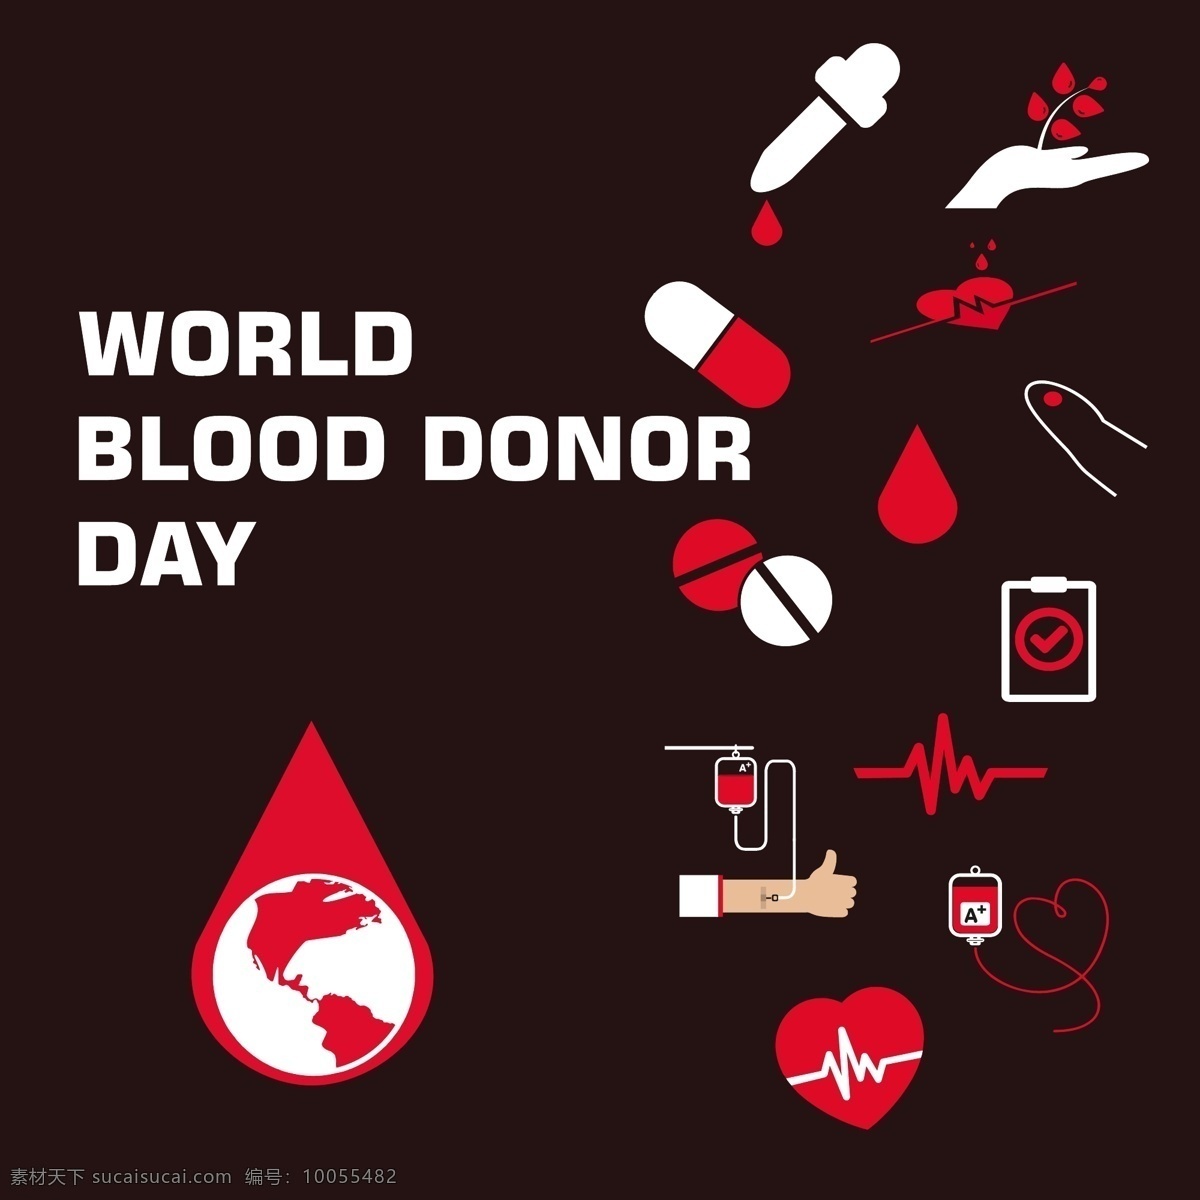 世界 献血 日 图表 元素 标志 海报 心 图标 一方面 医疗 健康 信息图表 红色 血 医院 医学 下降 帮助 生活 慈善 急救